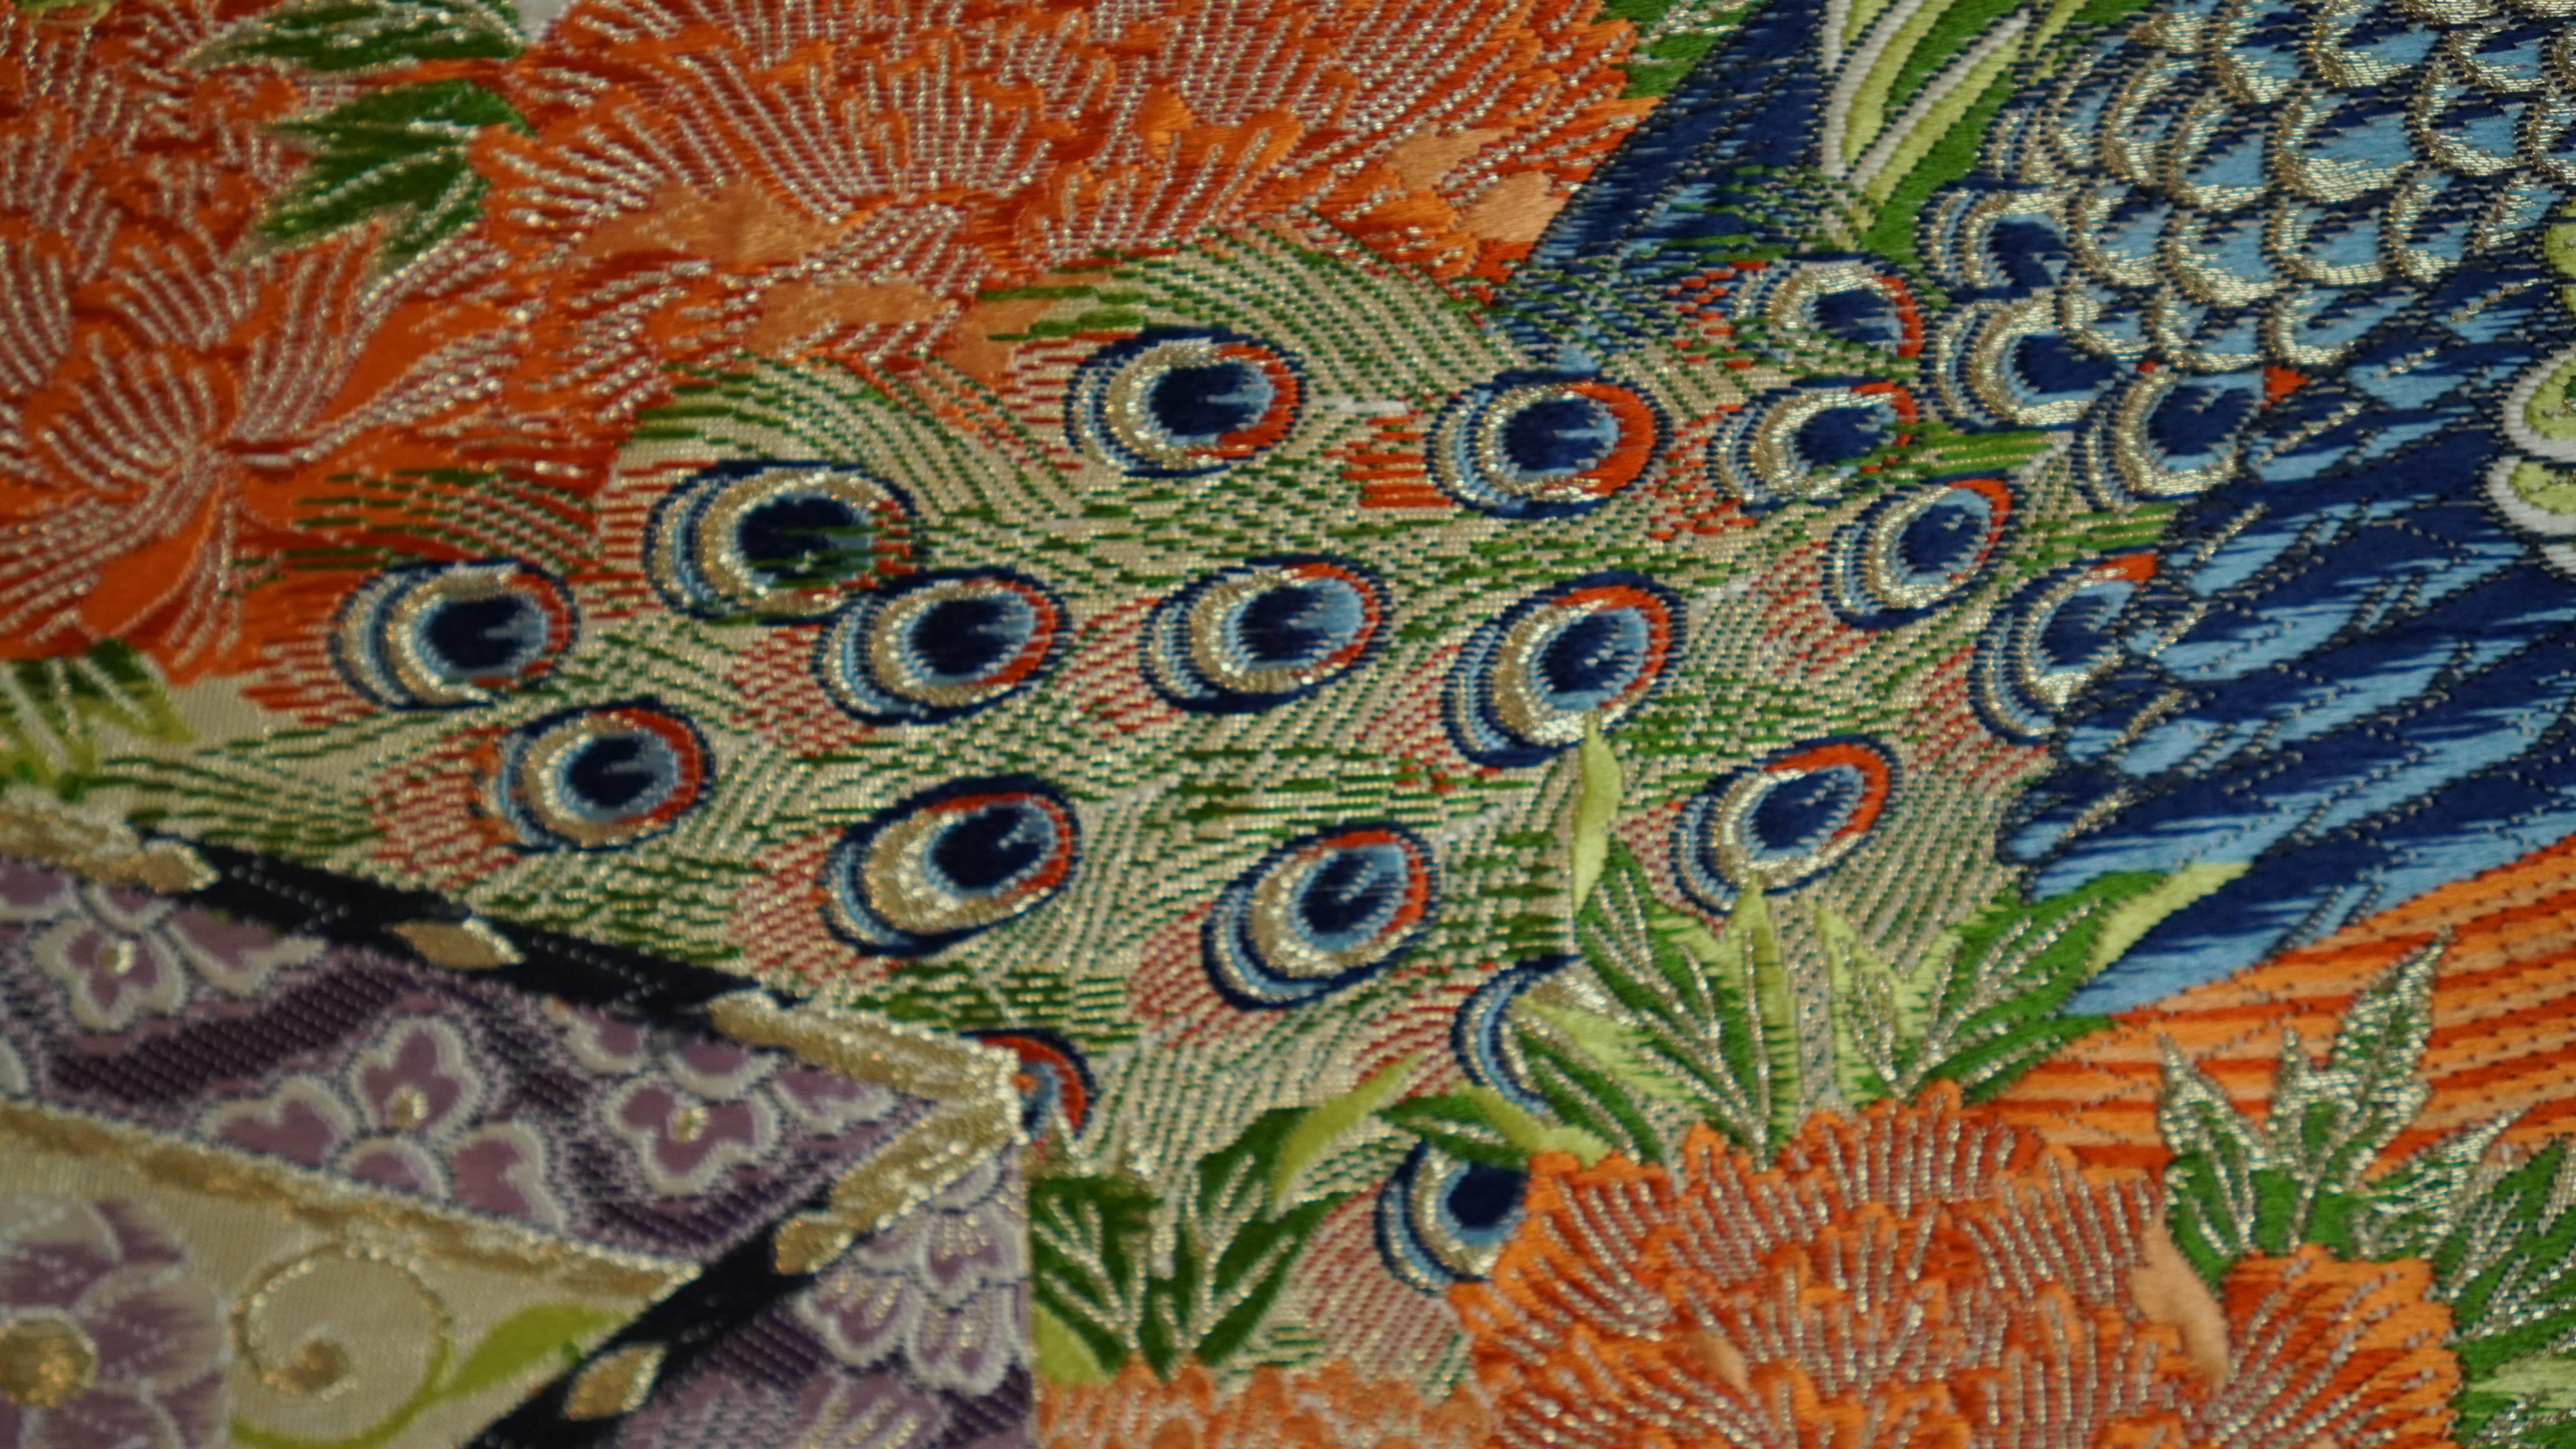  Japanese Art / Kimono Art / Tapestry, the King of Peacocks 1